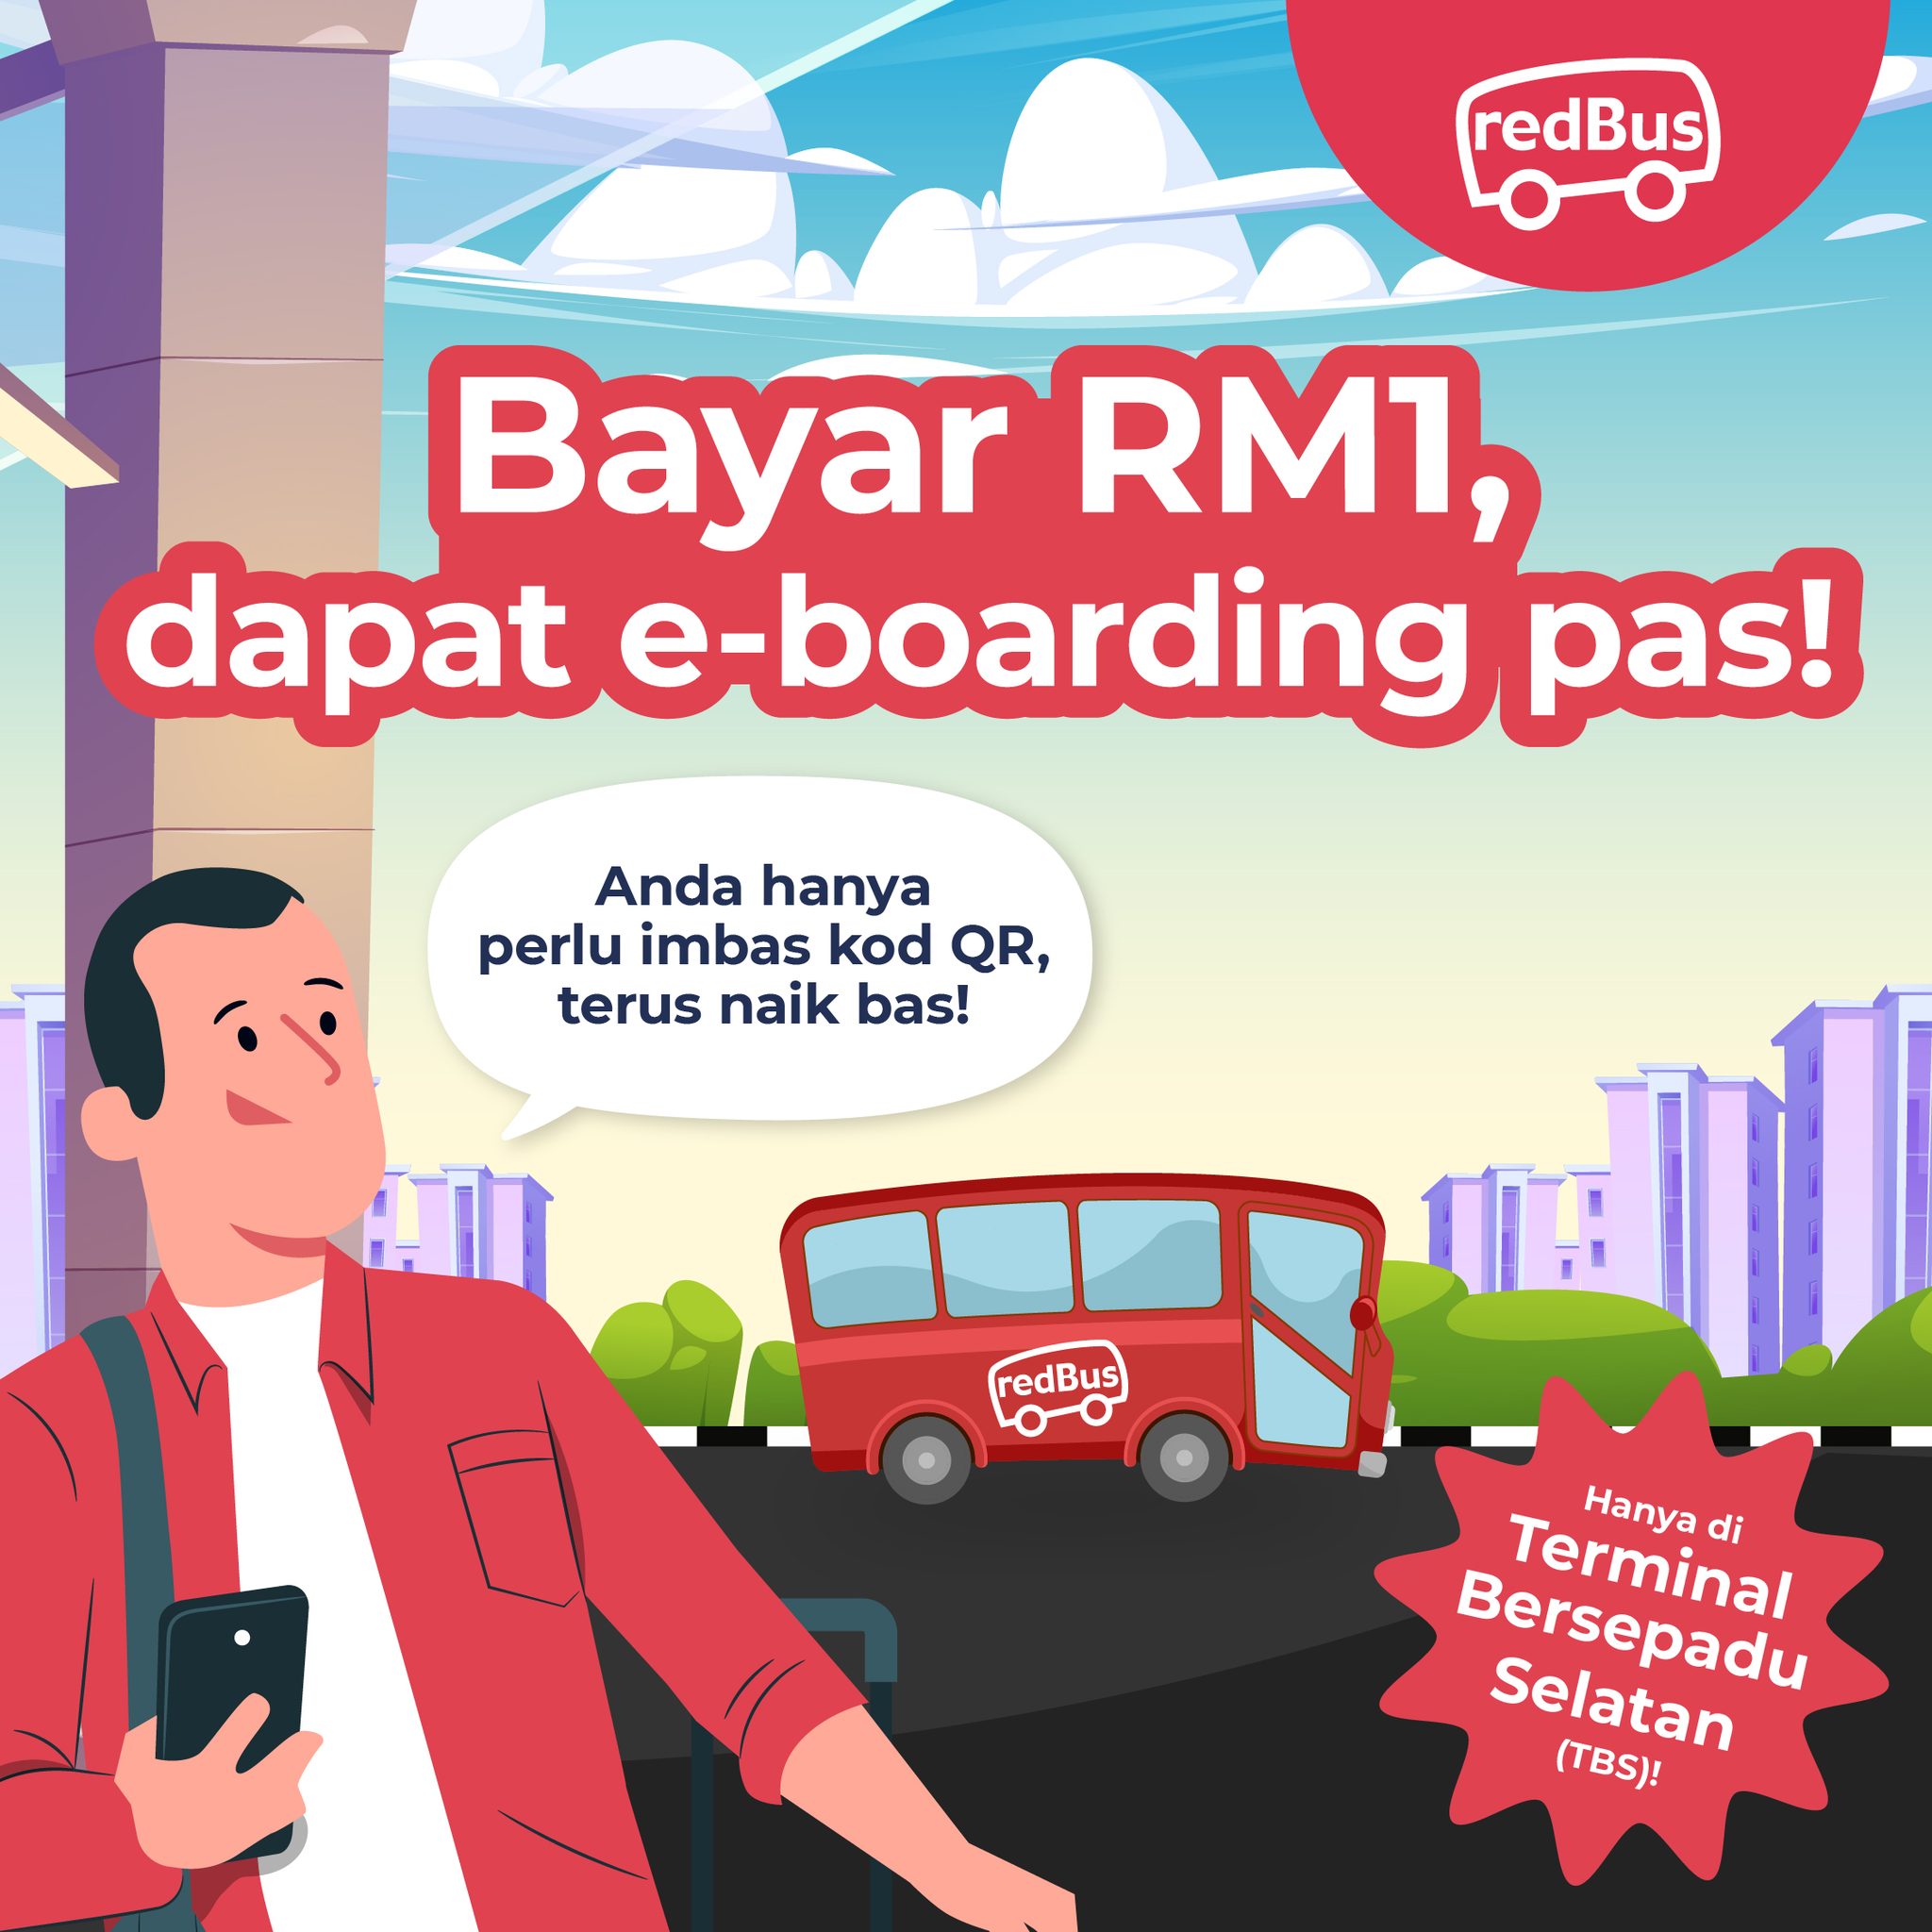 boarding pass tbs redbus